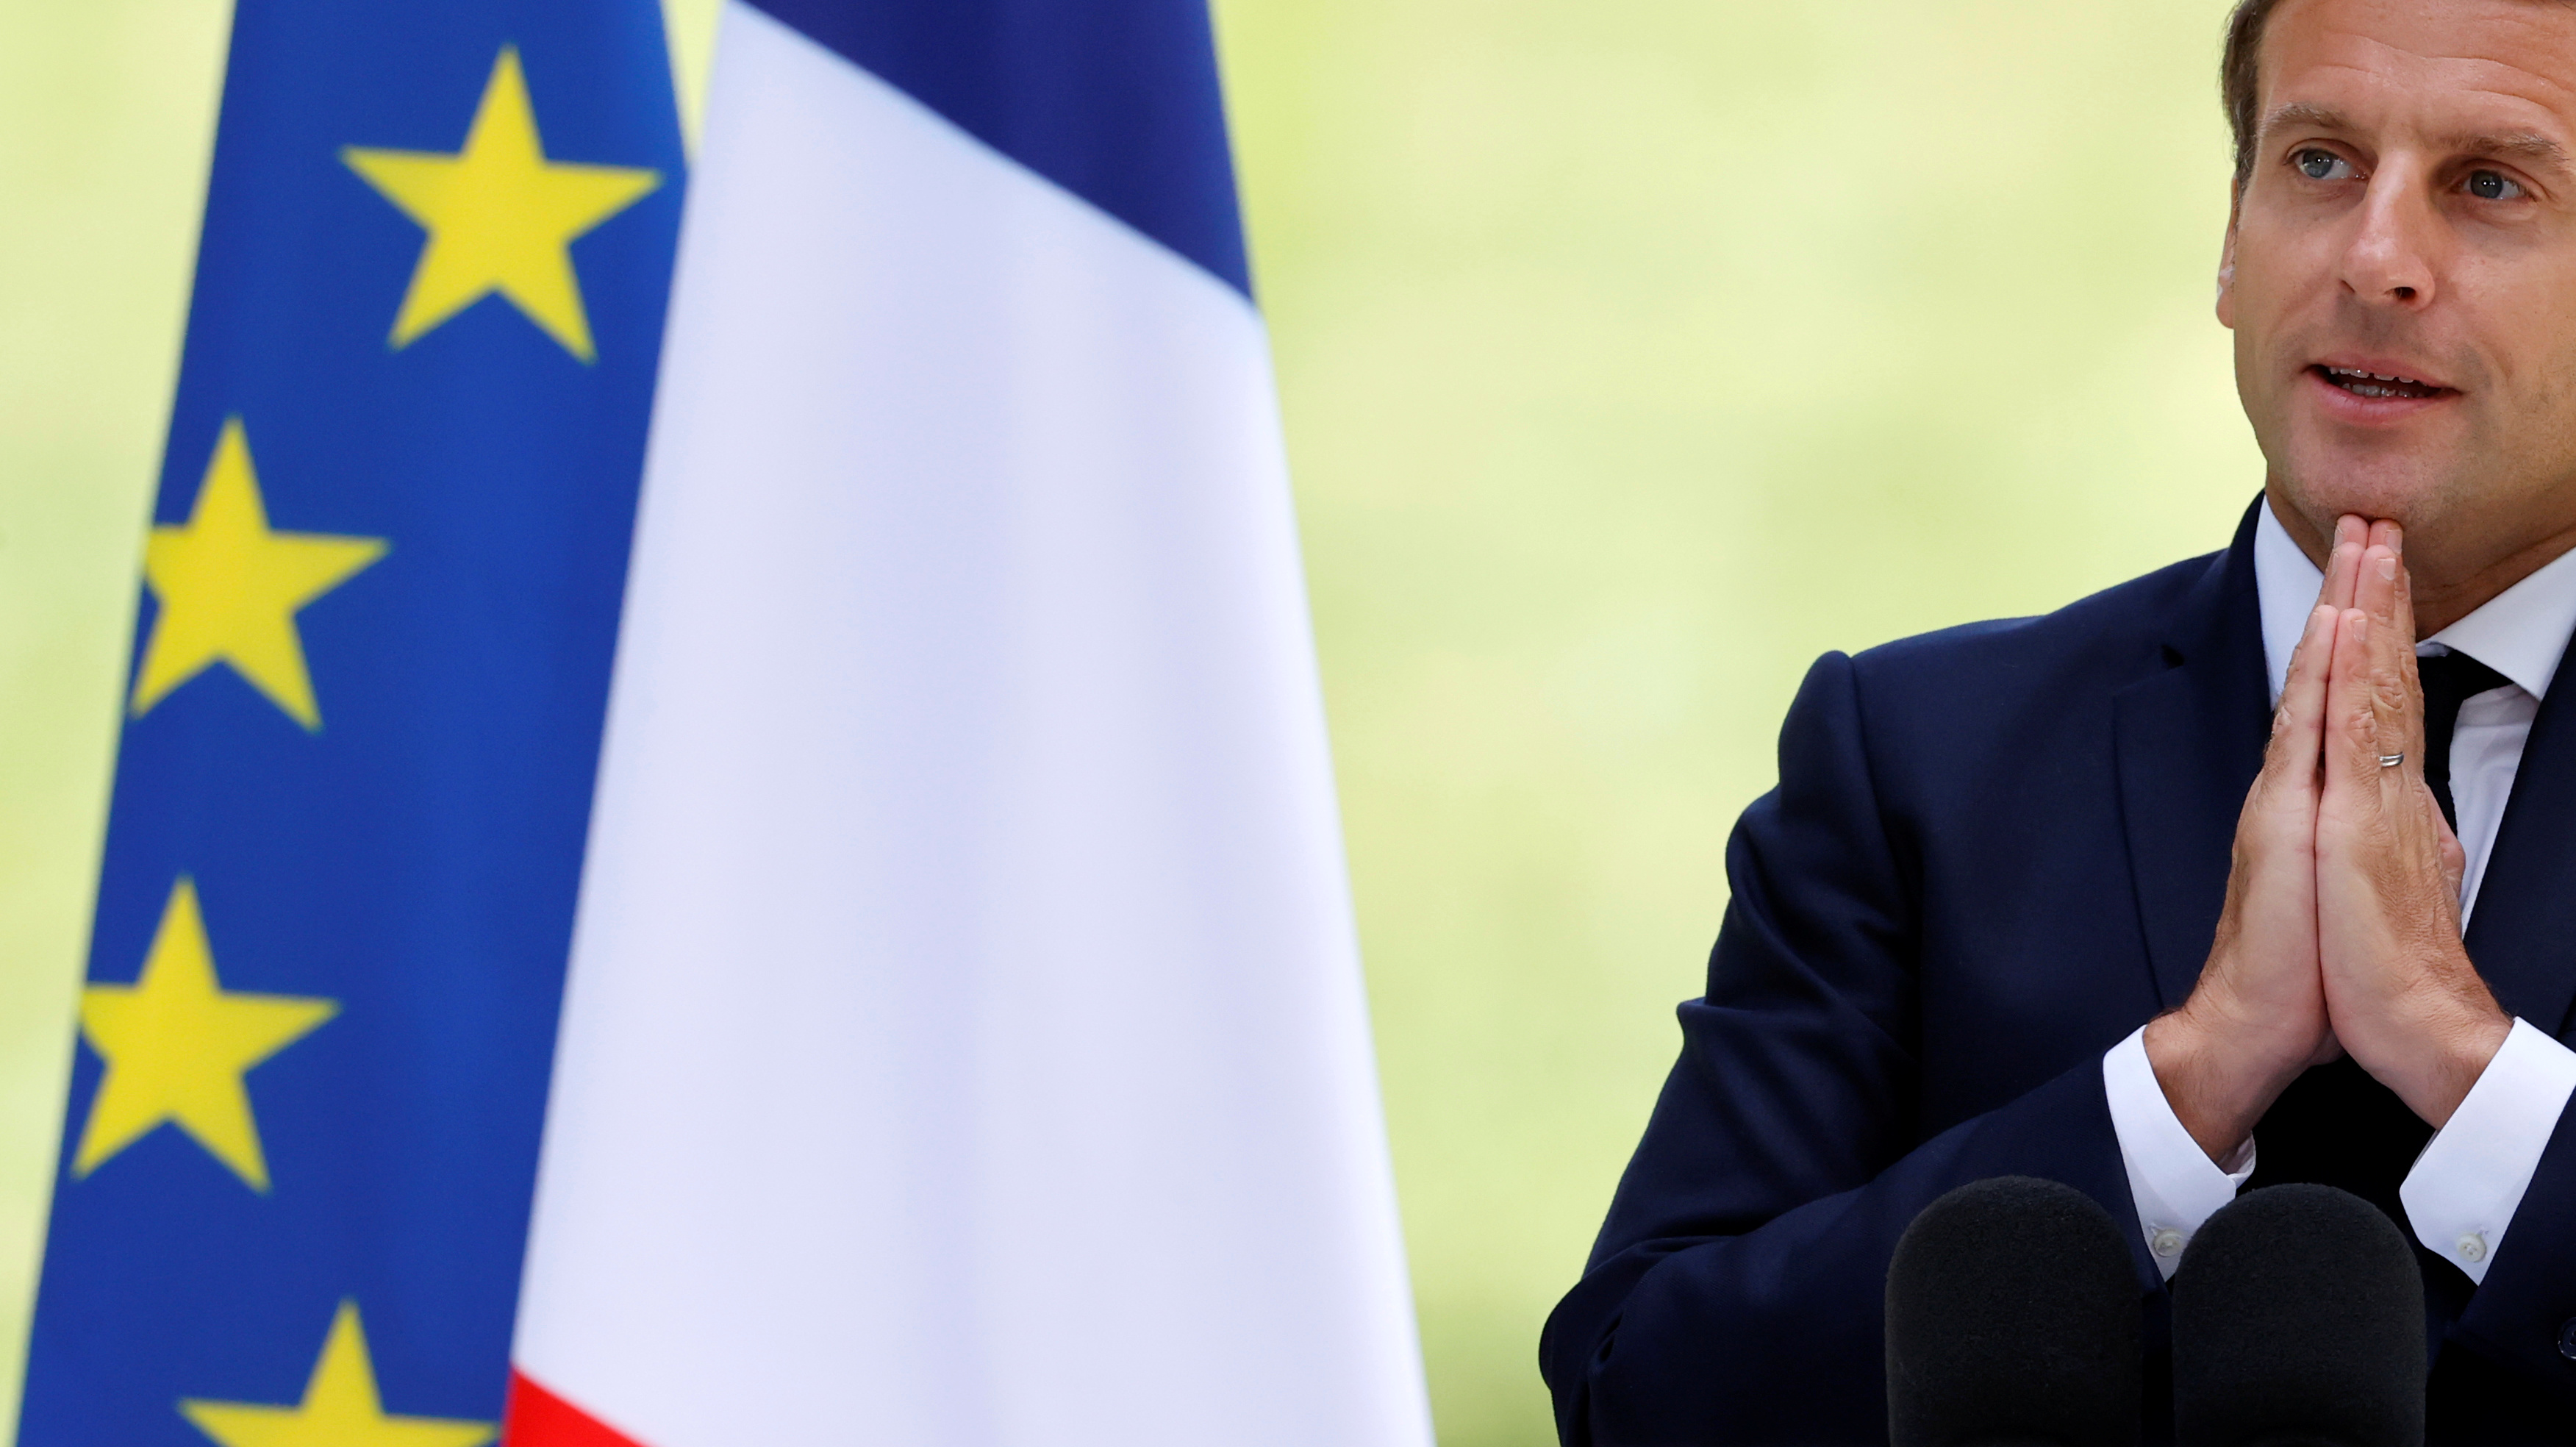 15 milliards pour 'la conversion écologique', référundum...: les principales annonces de Macron à la Convention climat